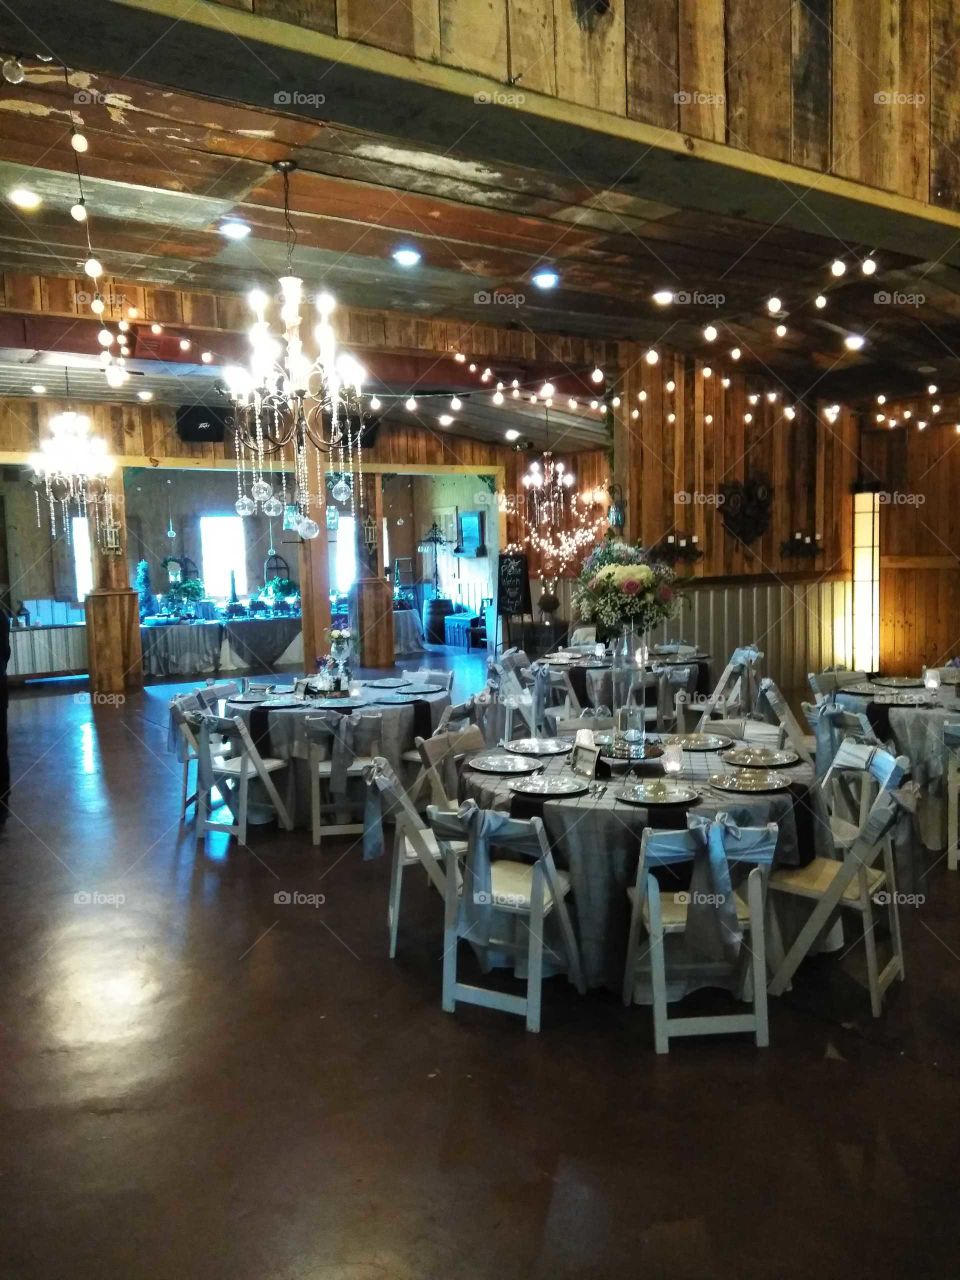 wedding reception hall in a barn